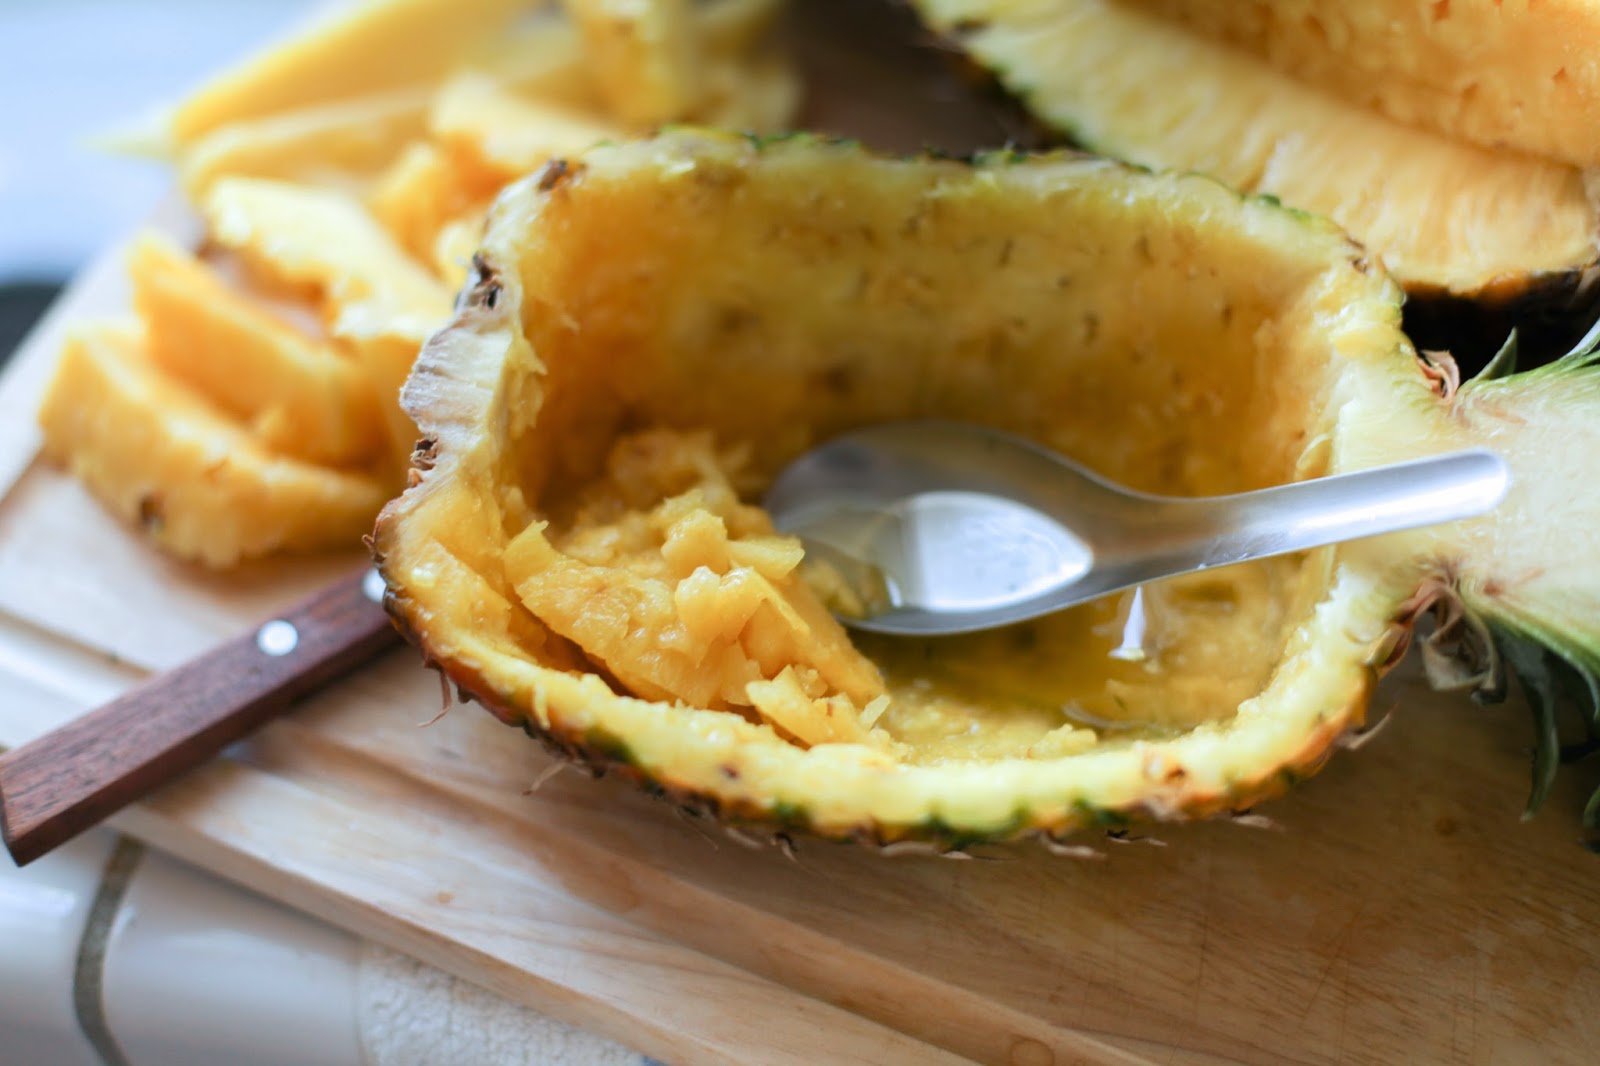 How to Carve a Pineapple Fruit Basket | via Chandara Creative